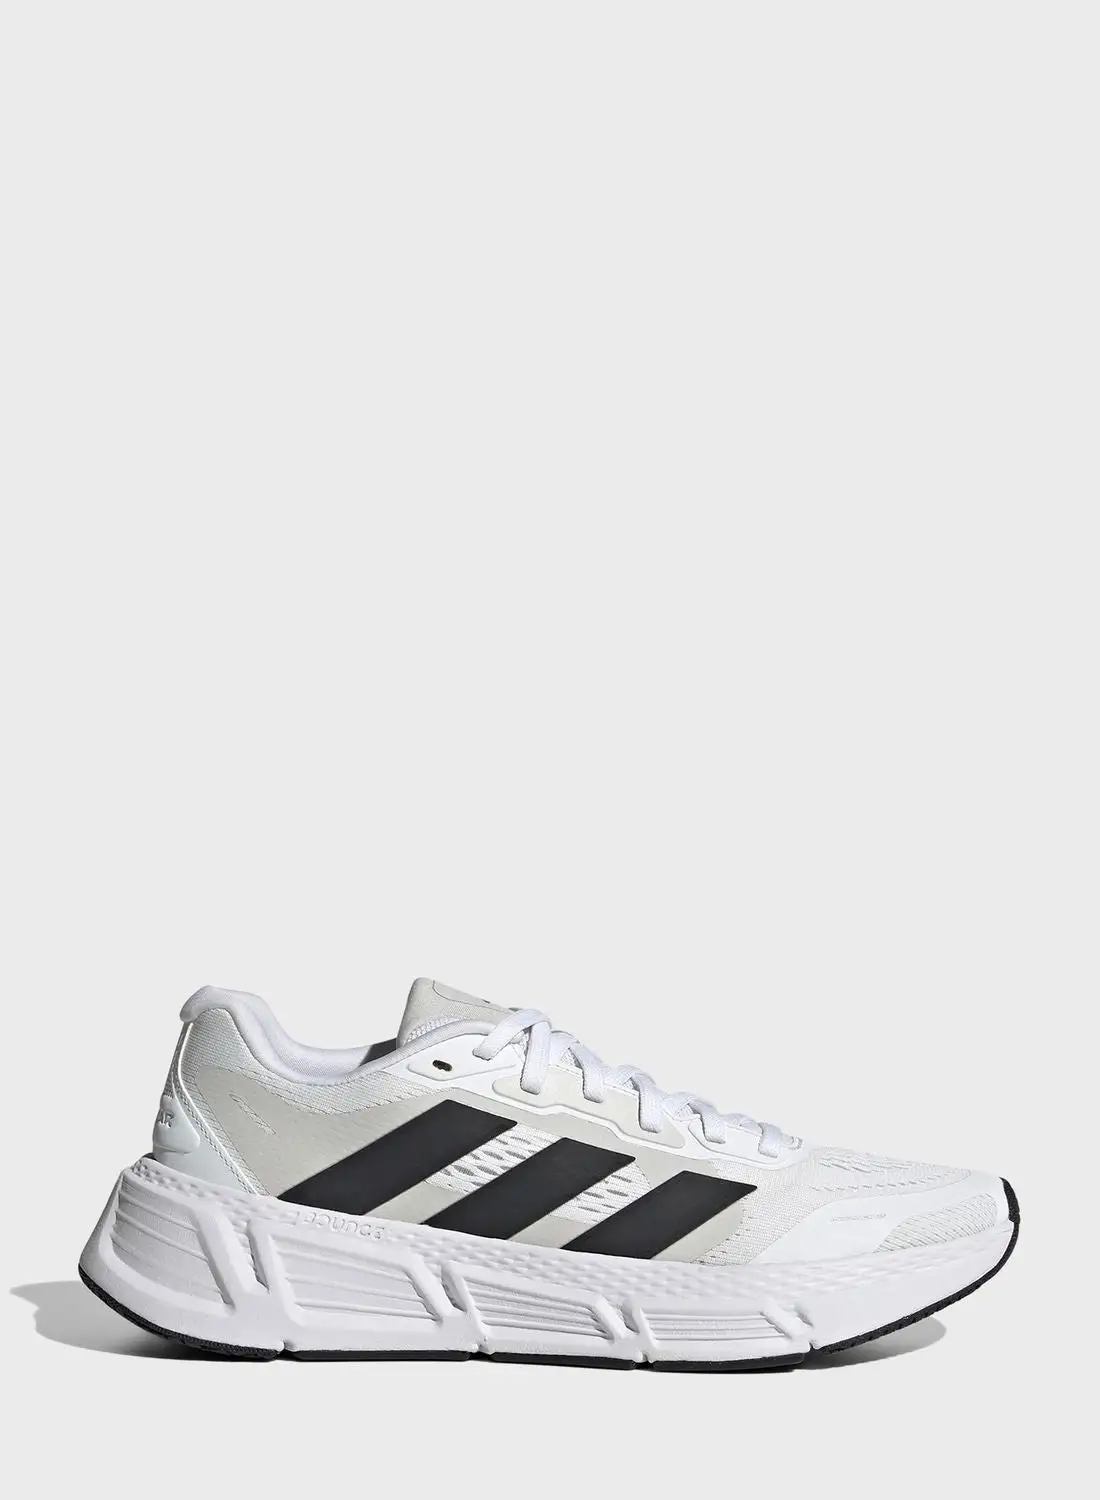 Adidas Questar 2 W